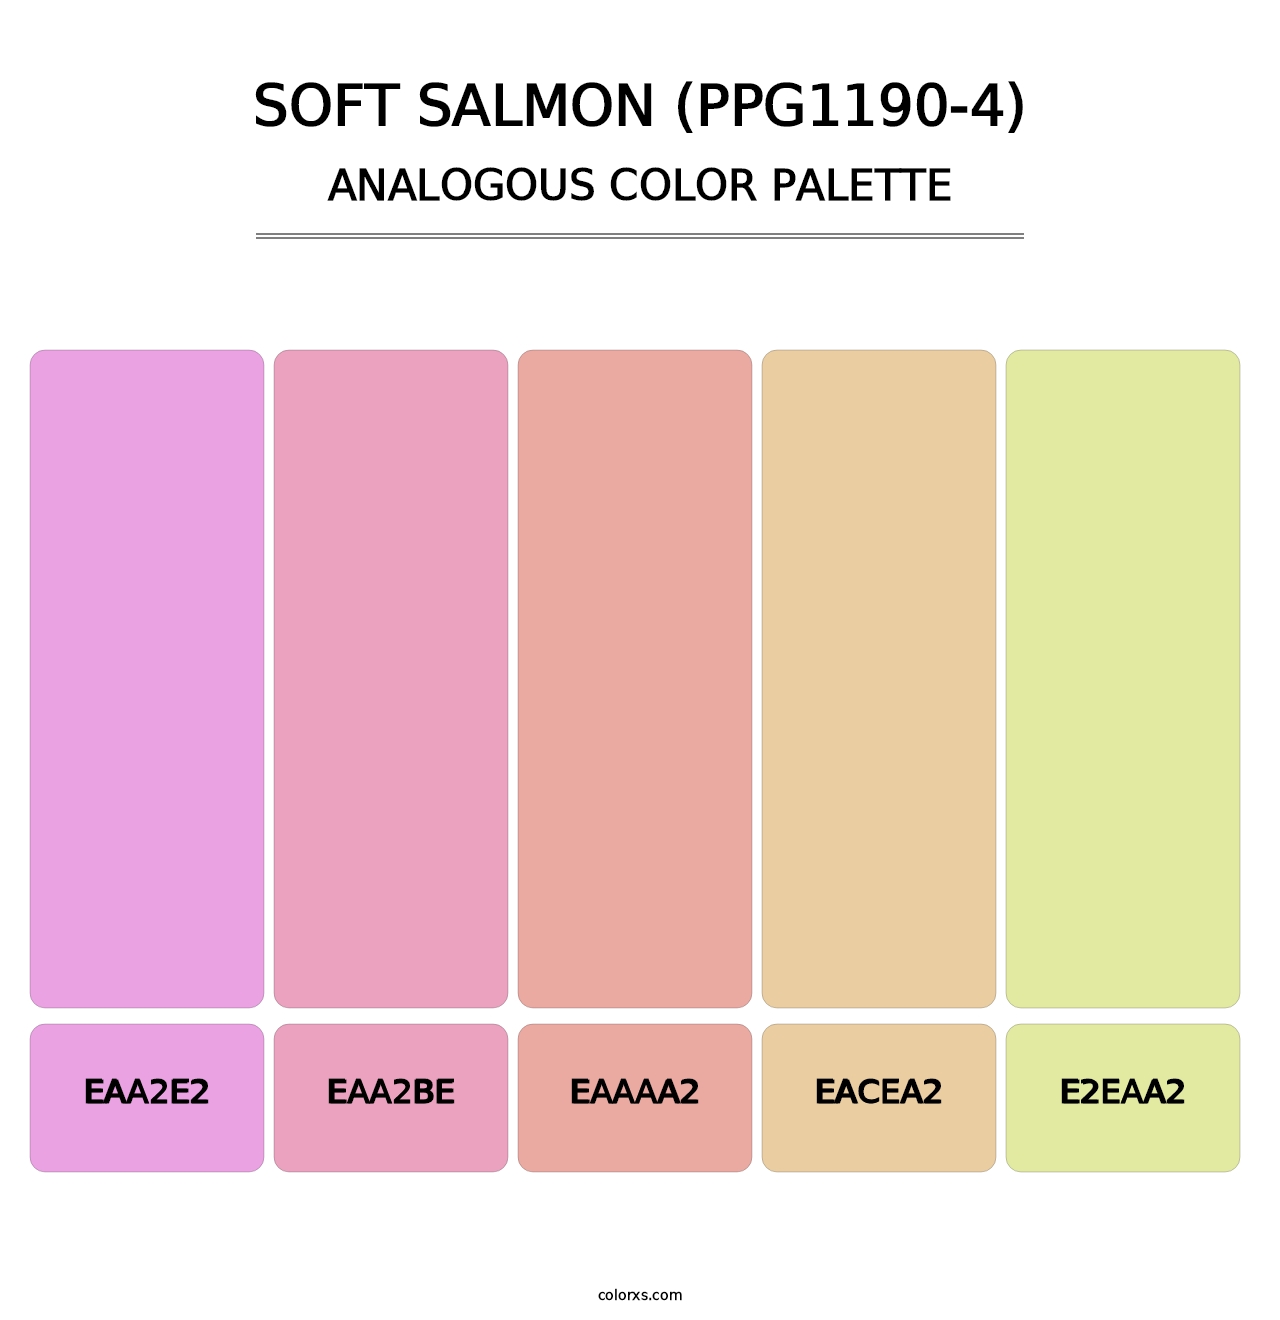 Soft Salmon (PPG1190-4) - Analogous Color Palette